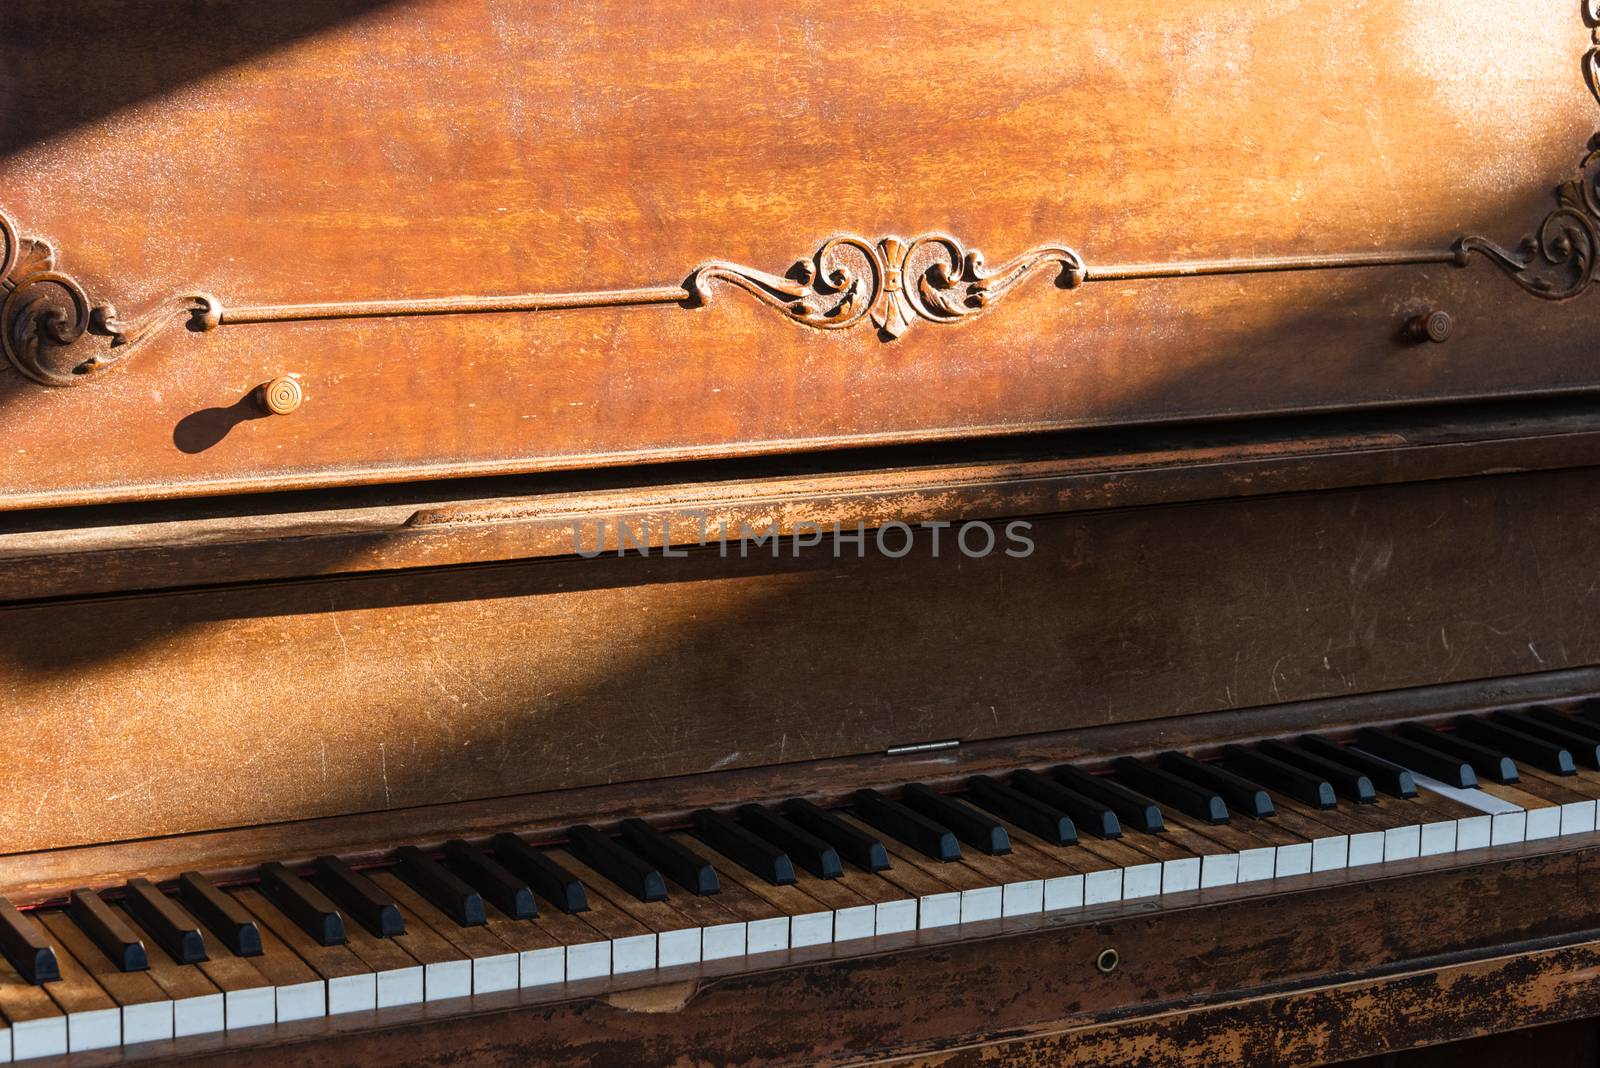 Open keyboard of street piano in sunlight ray